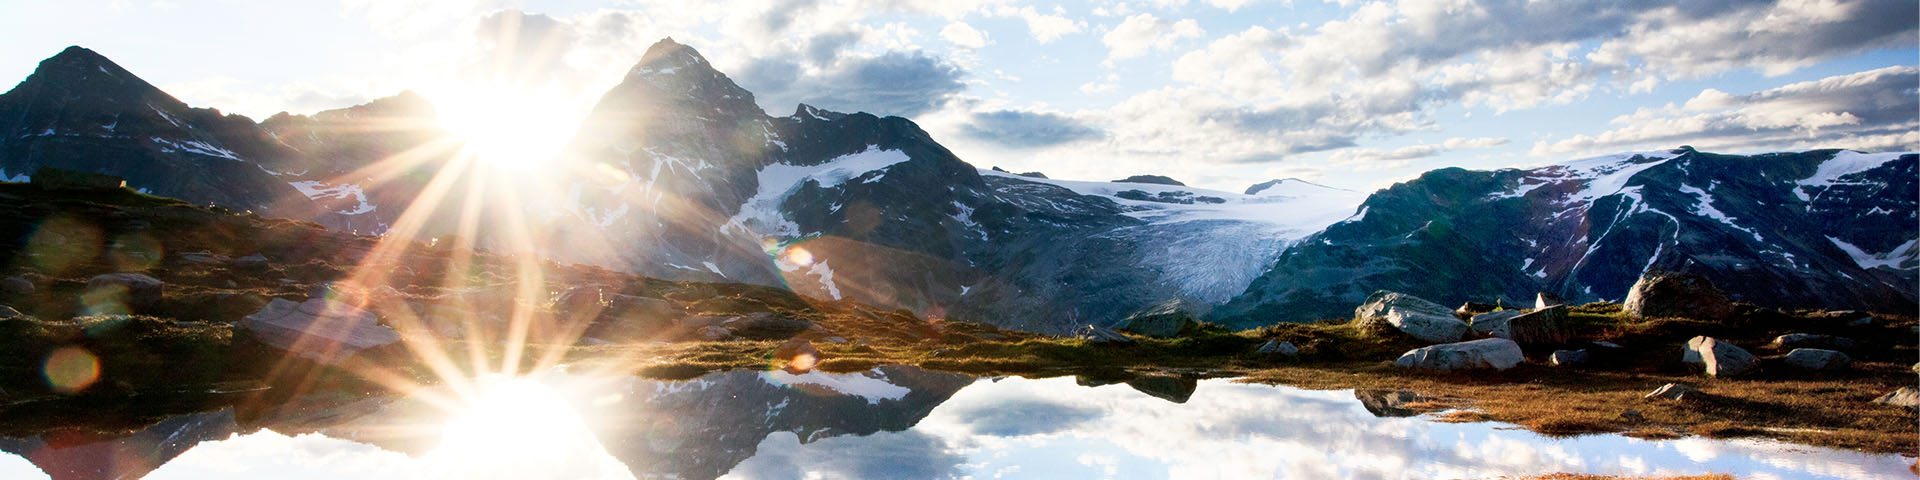 Lever du soleil sur un lac alpin avec un décor montagneux et glaciaire